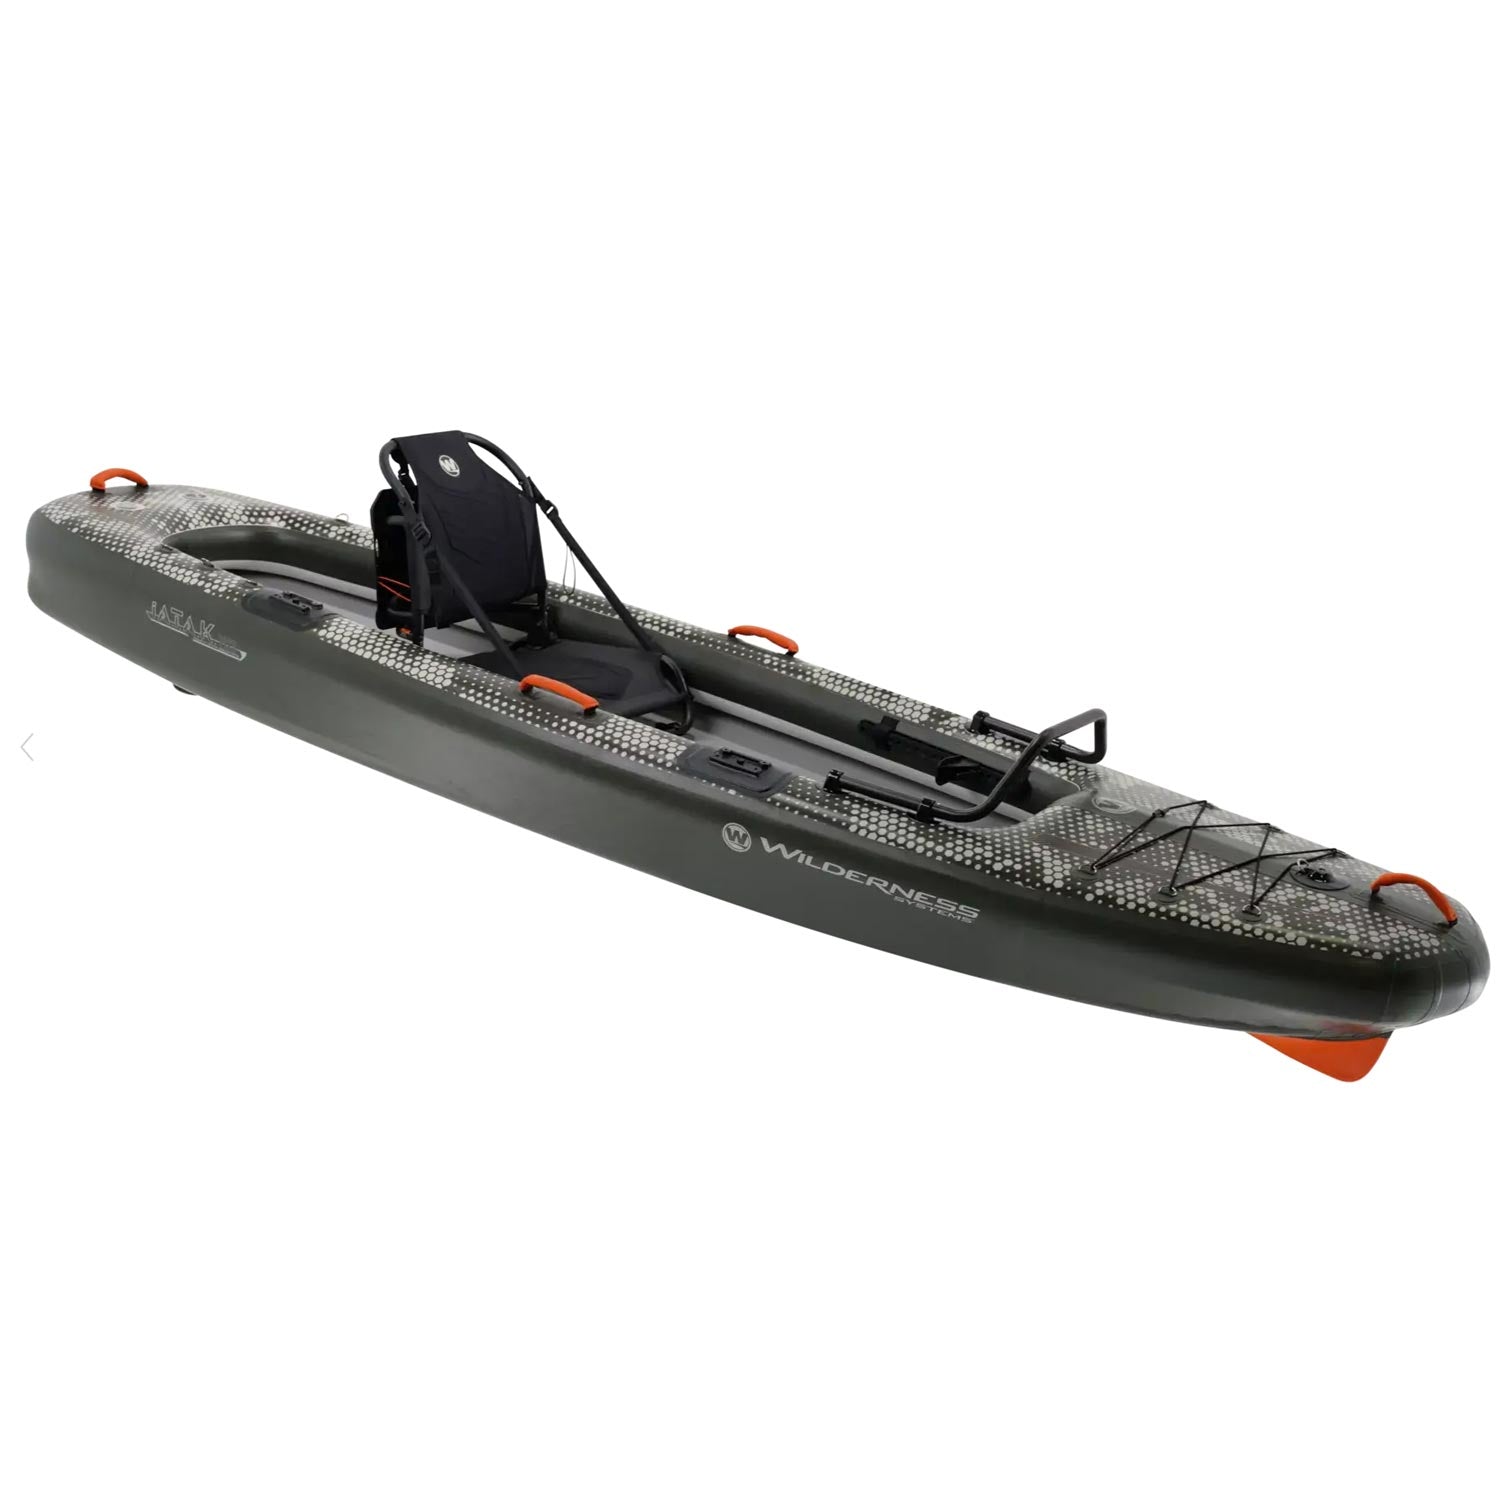 Wilderness Systems iATAK 110 Inflatable Fishing Kayak Digital Camo angle view